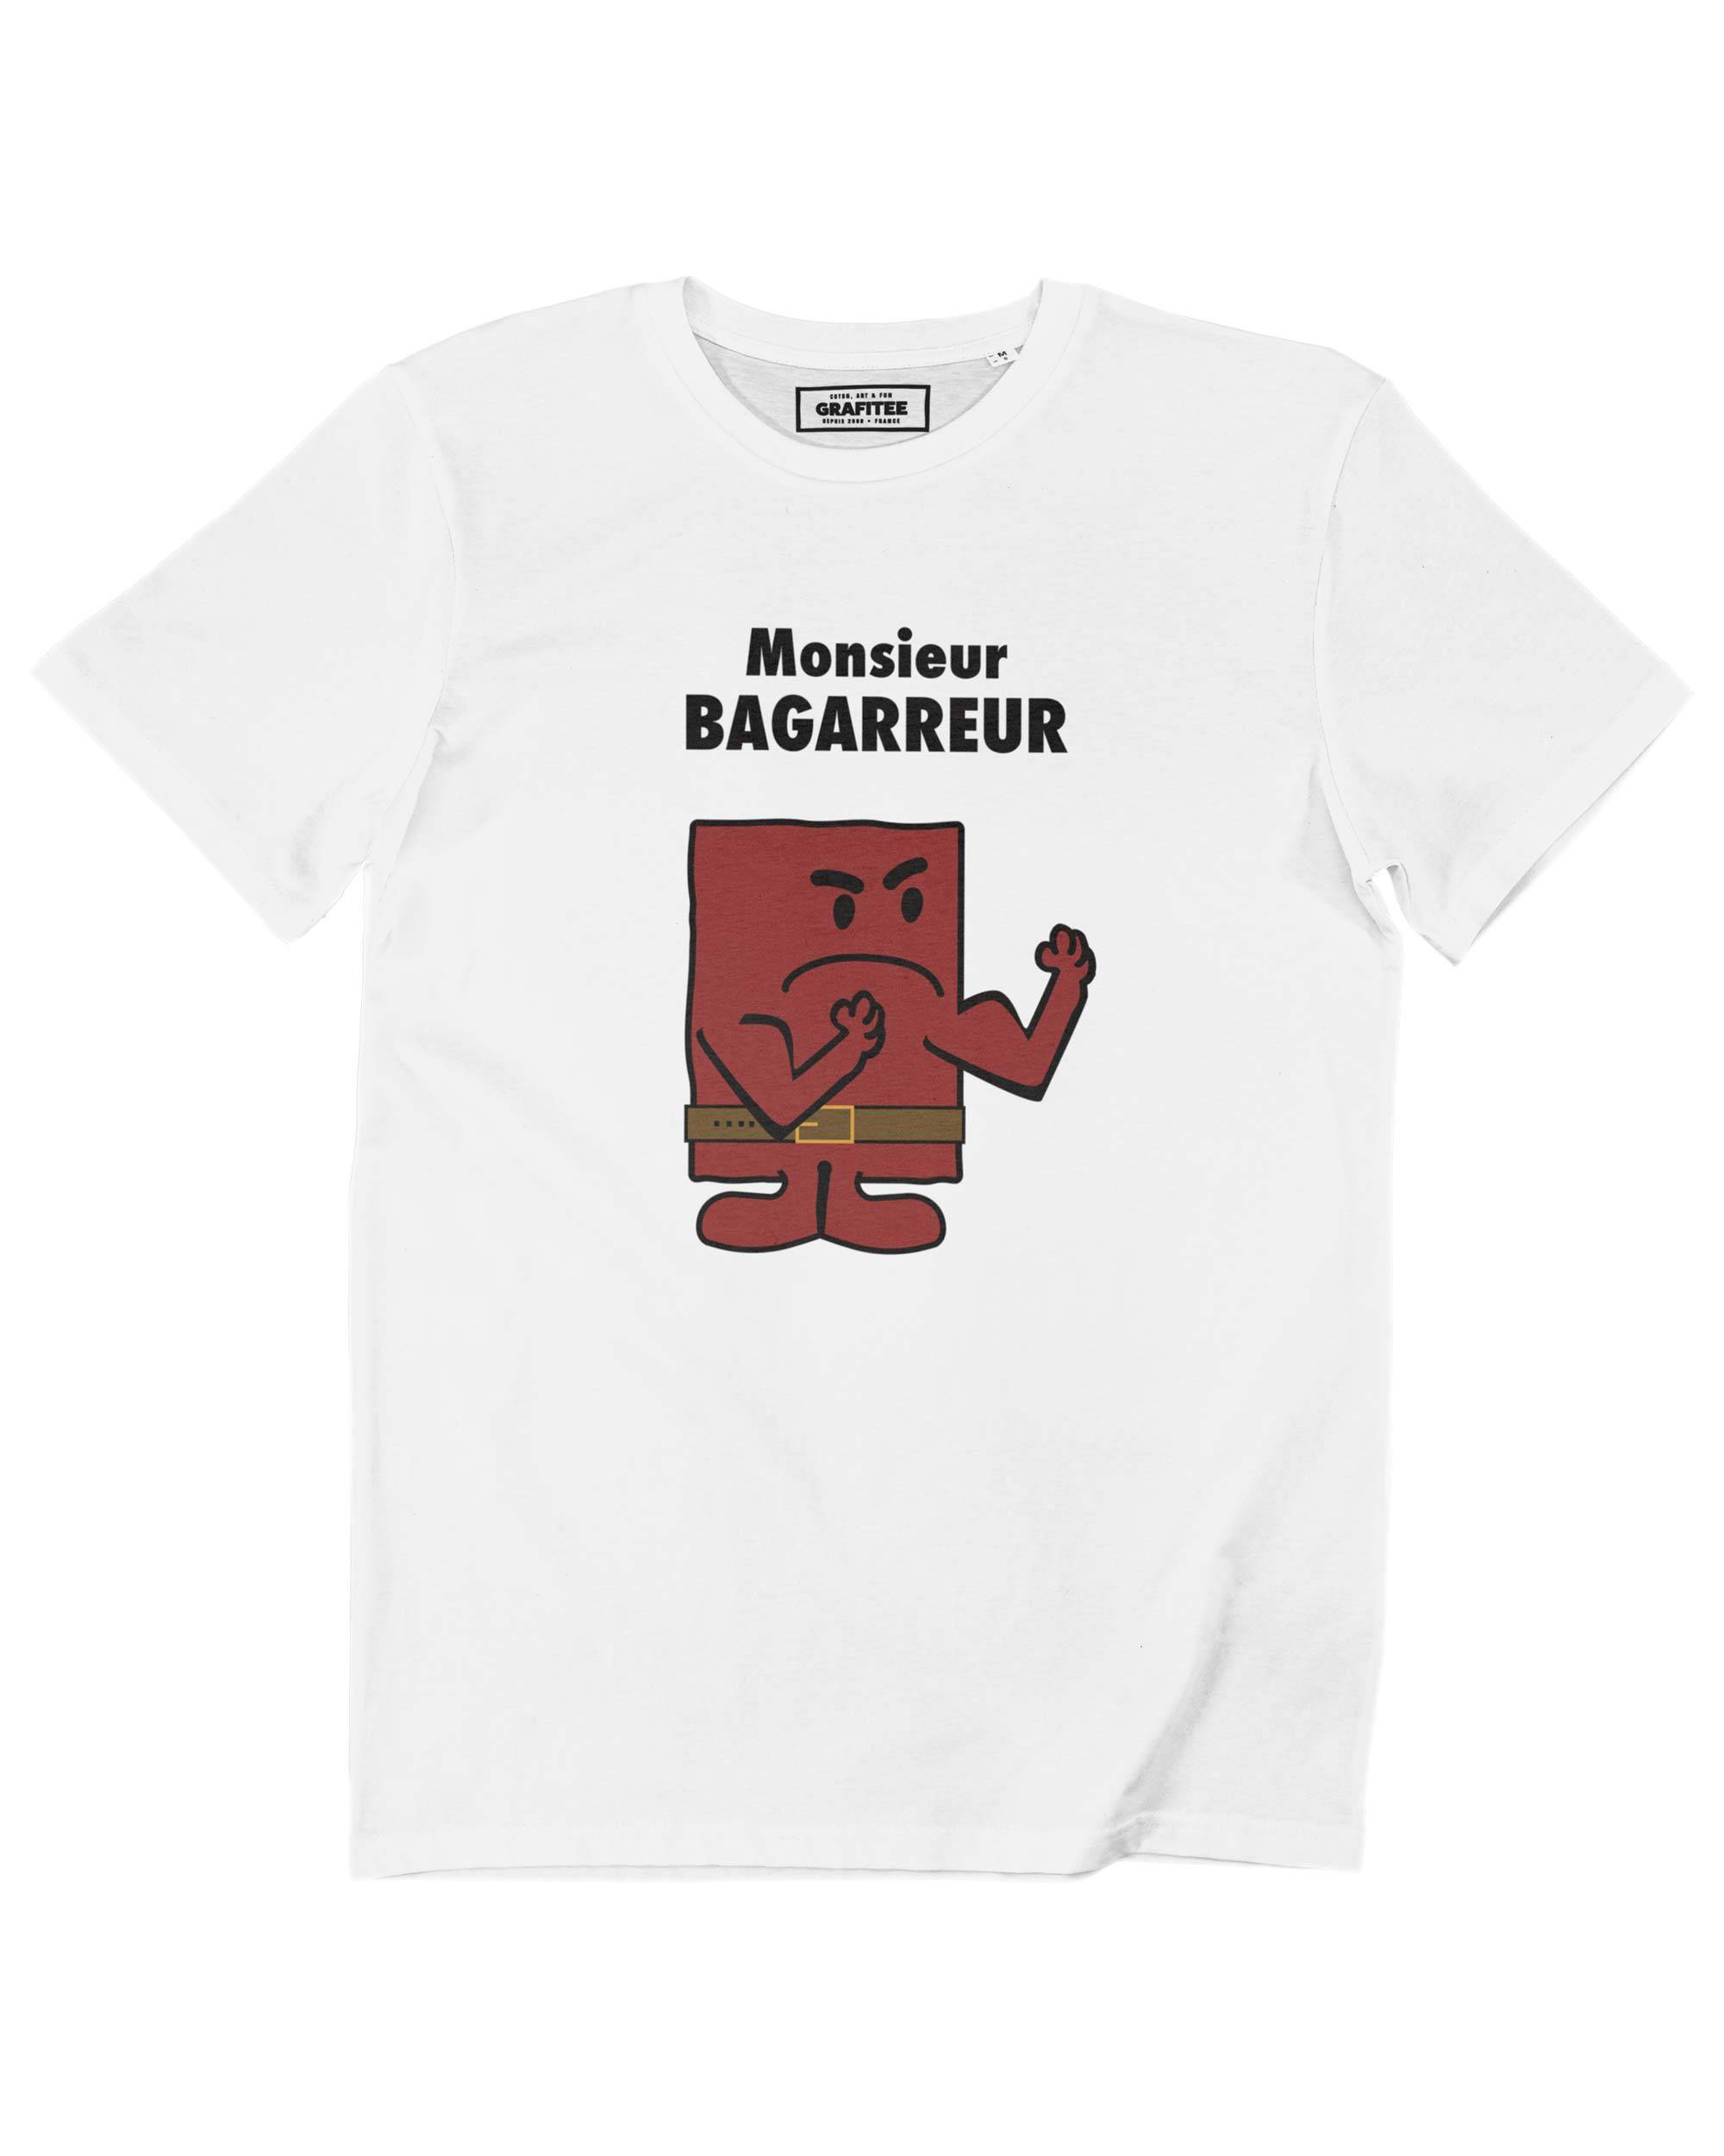 T-shirt Monsieur Bagarreur Grafitee